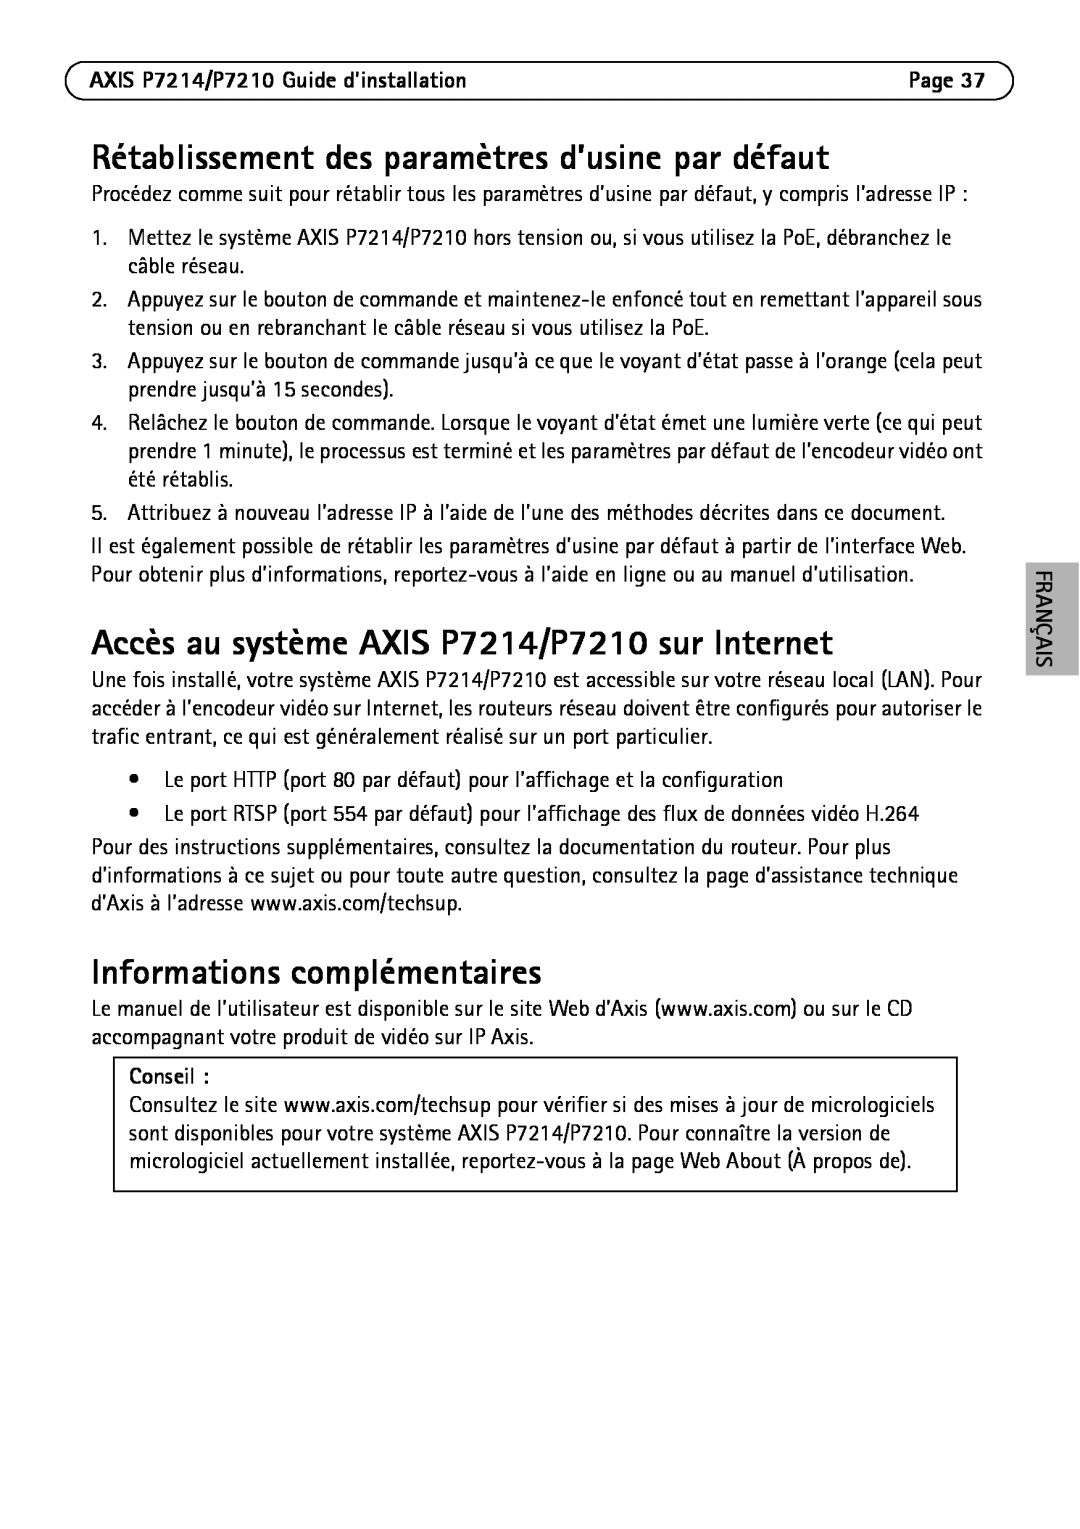 Axis Communications P7214/P7210 Rétablissement des paramètres d’usine par défaut, Informations complémentaires, Conseil 